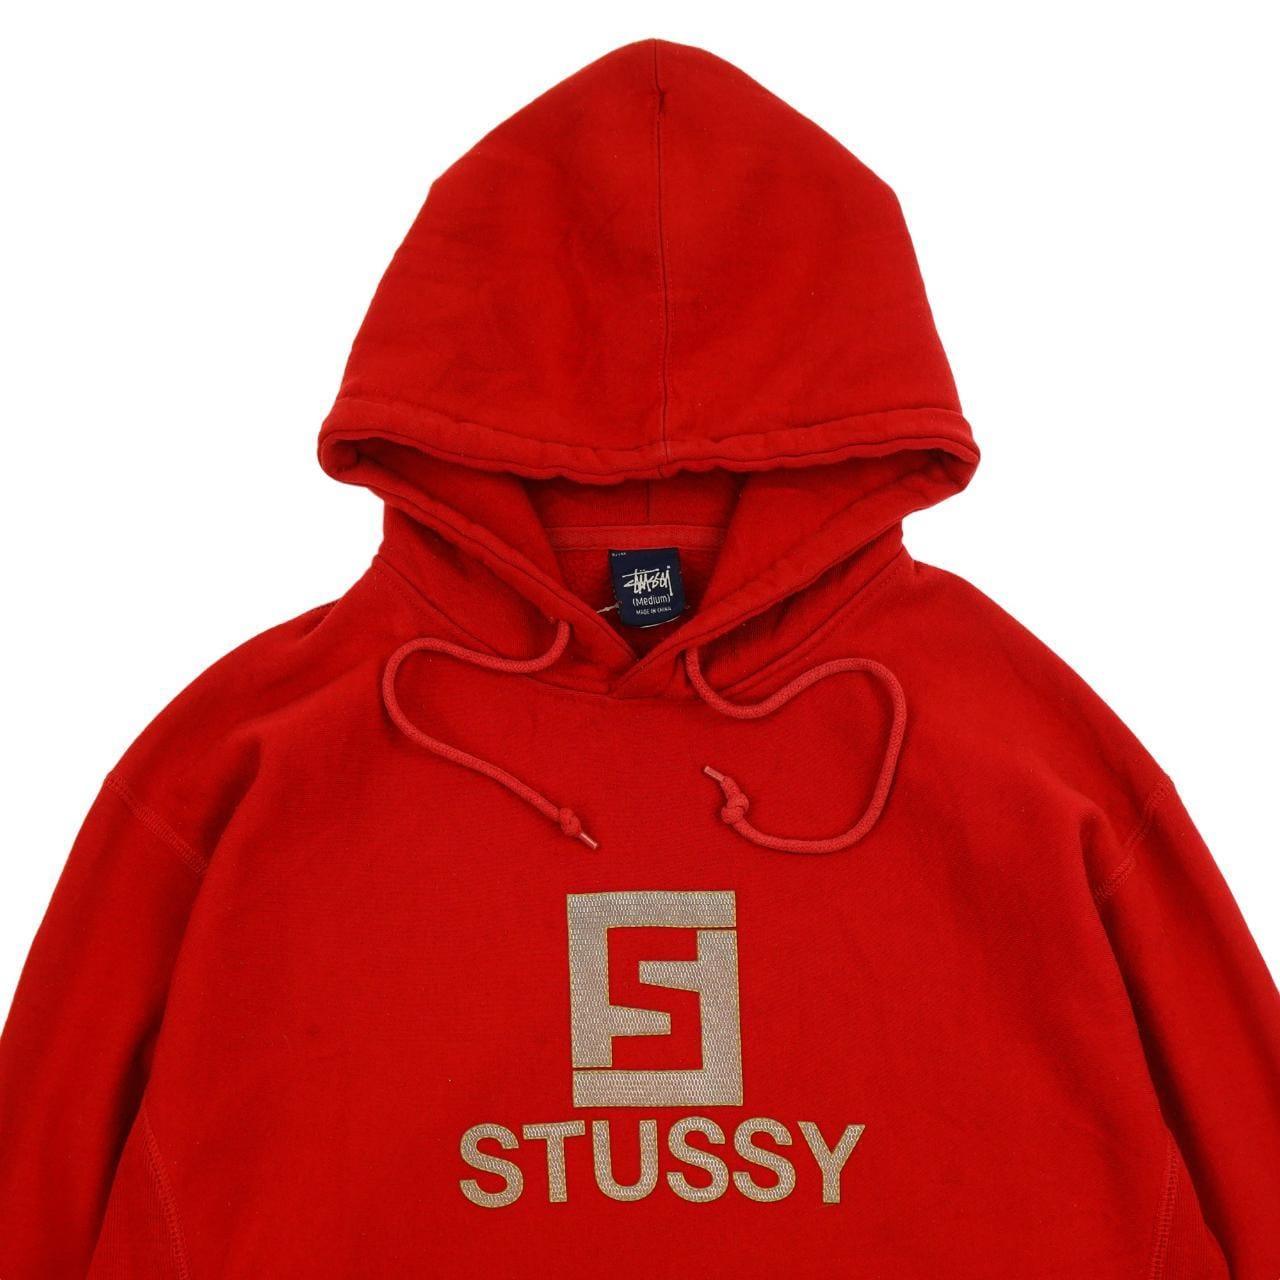 Vintage Stussy Logo Hoodie Size M - Known Source